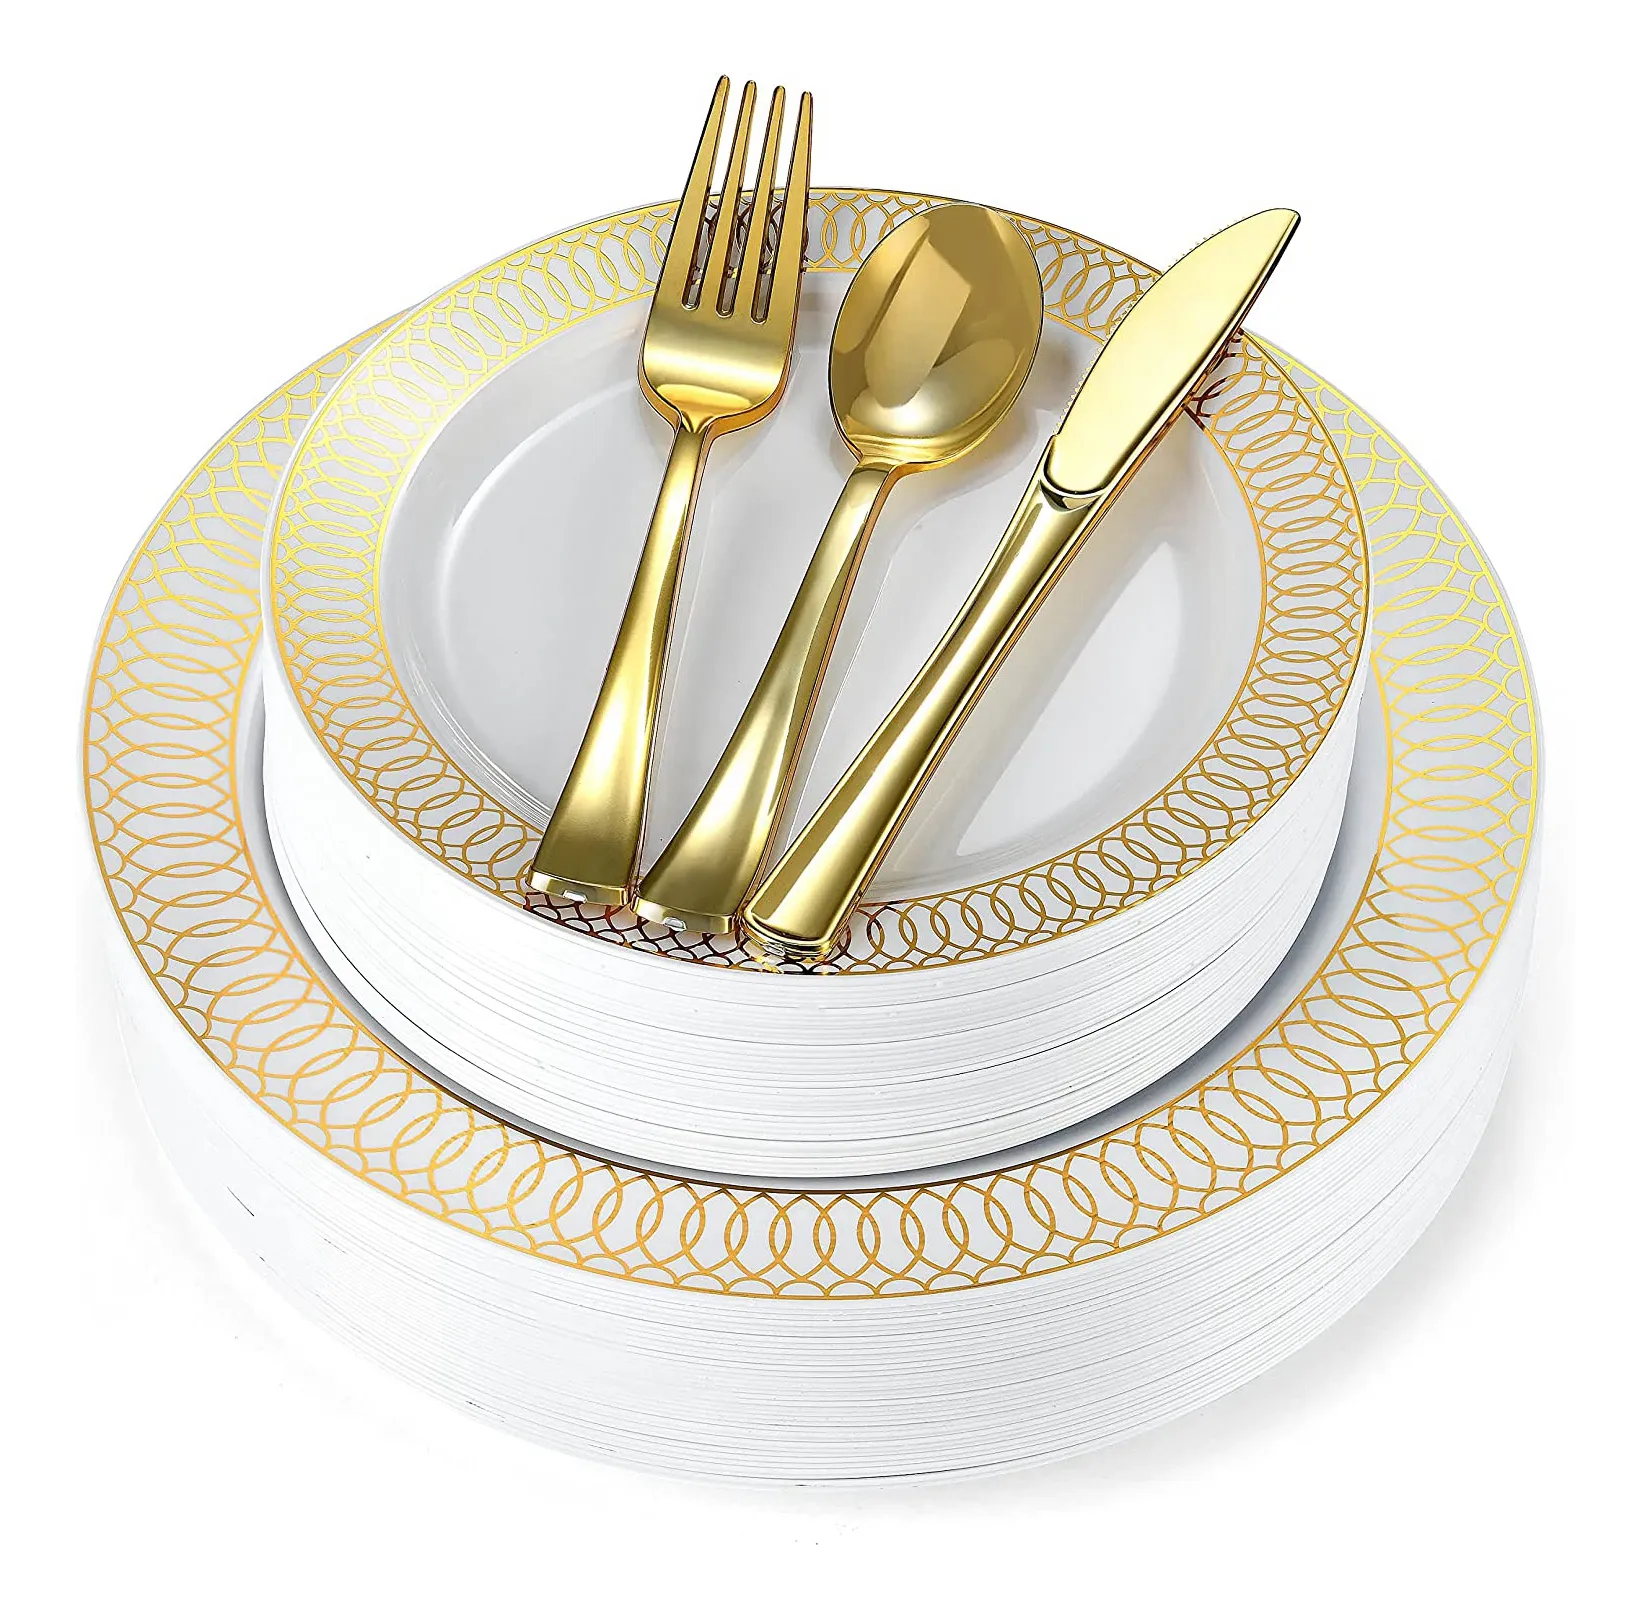 Einweg Kunststoff Fancy Flower Design Gold gestempelt Ladegerät Teller Geschirr-Sets für Party